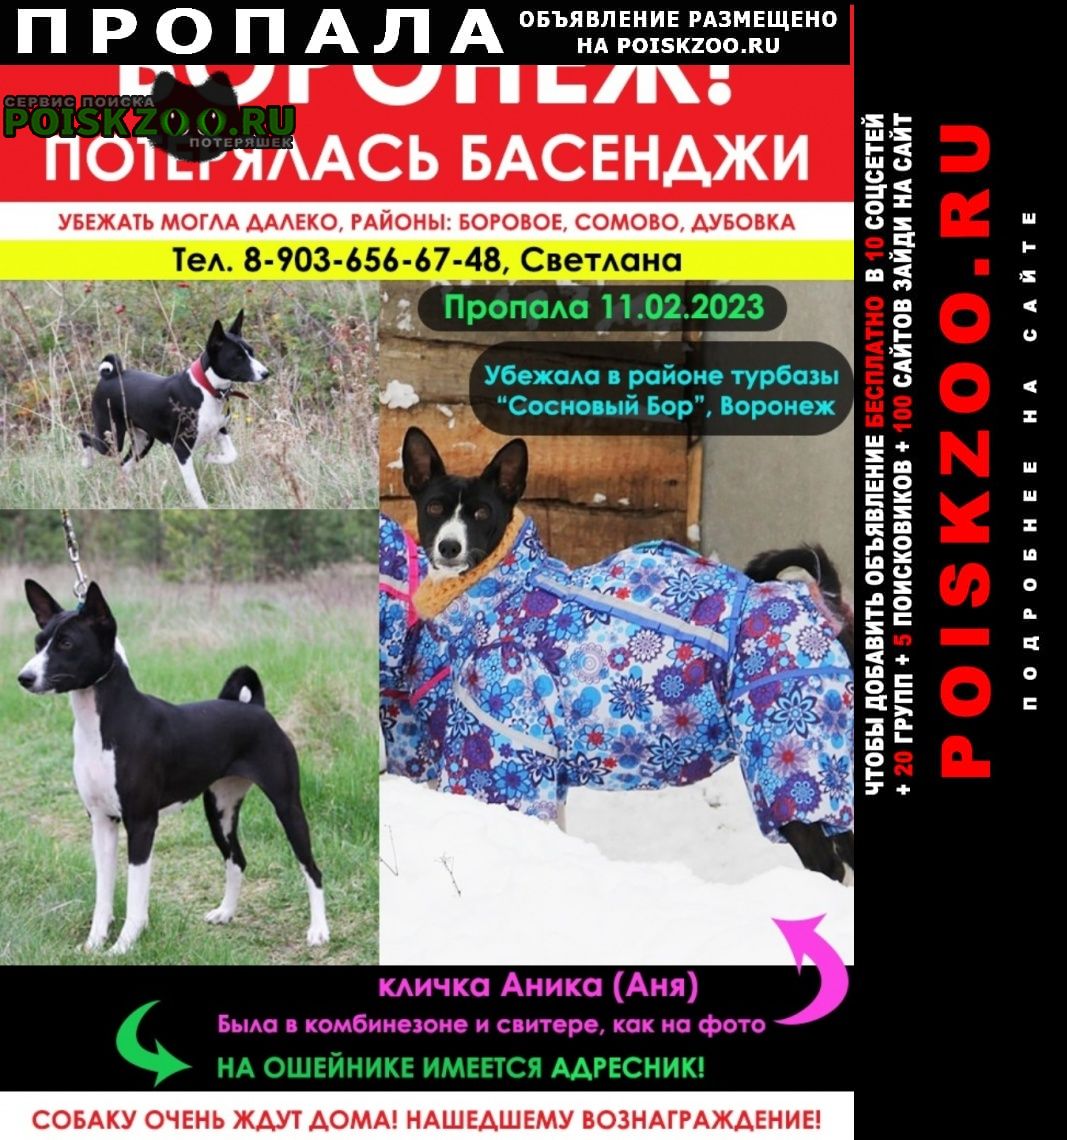 Пропала собака басенджи в е, боровое Воронеж